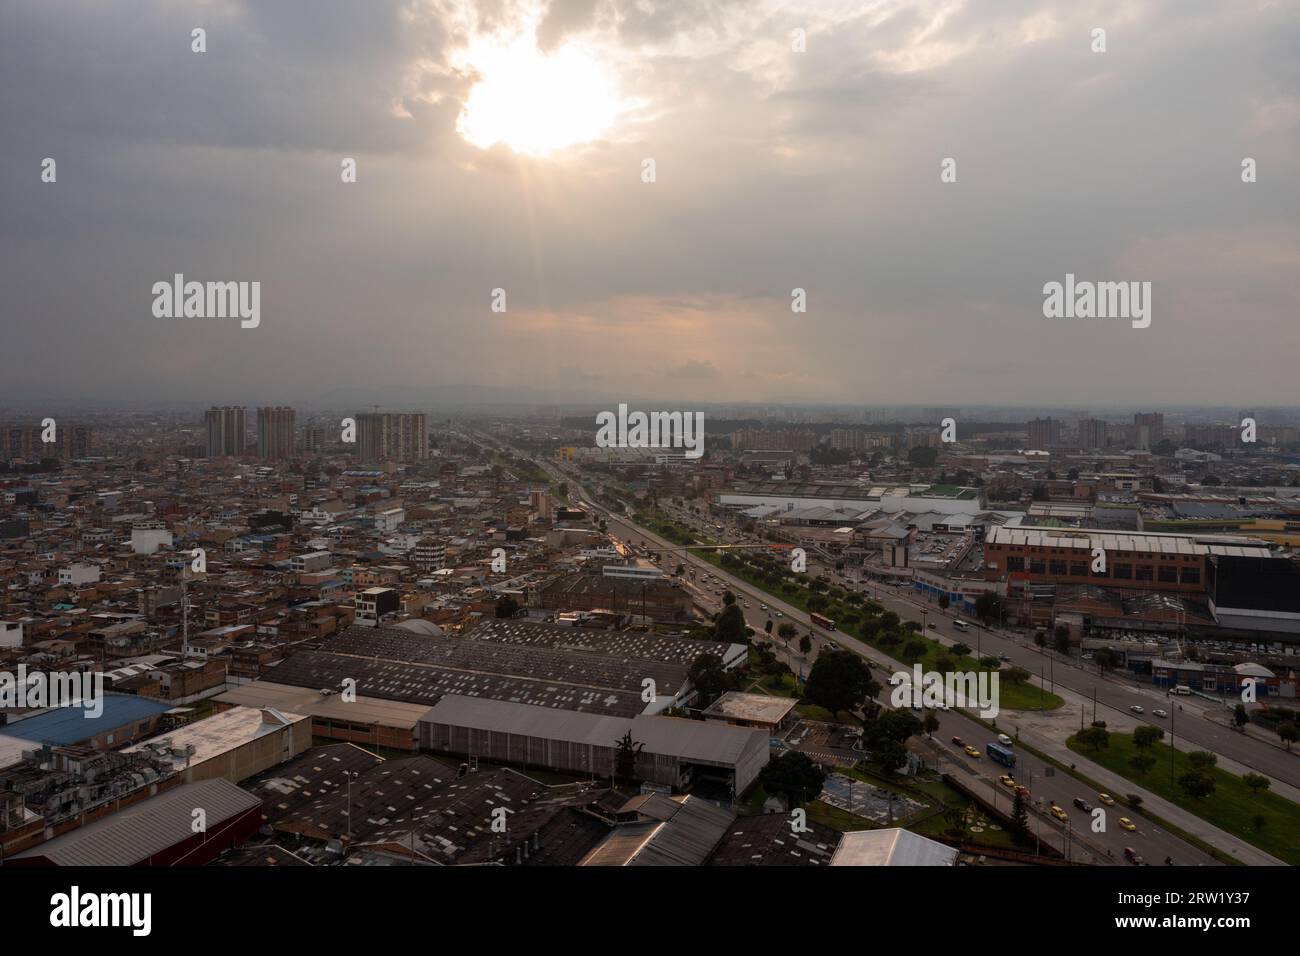 Vista aerea panoramica del paesaggio urbano di Bogotà, la capitale della Colombia. Foto Stock